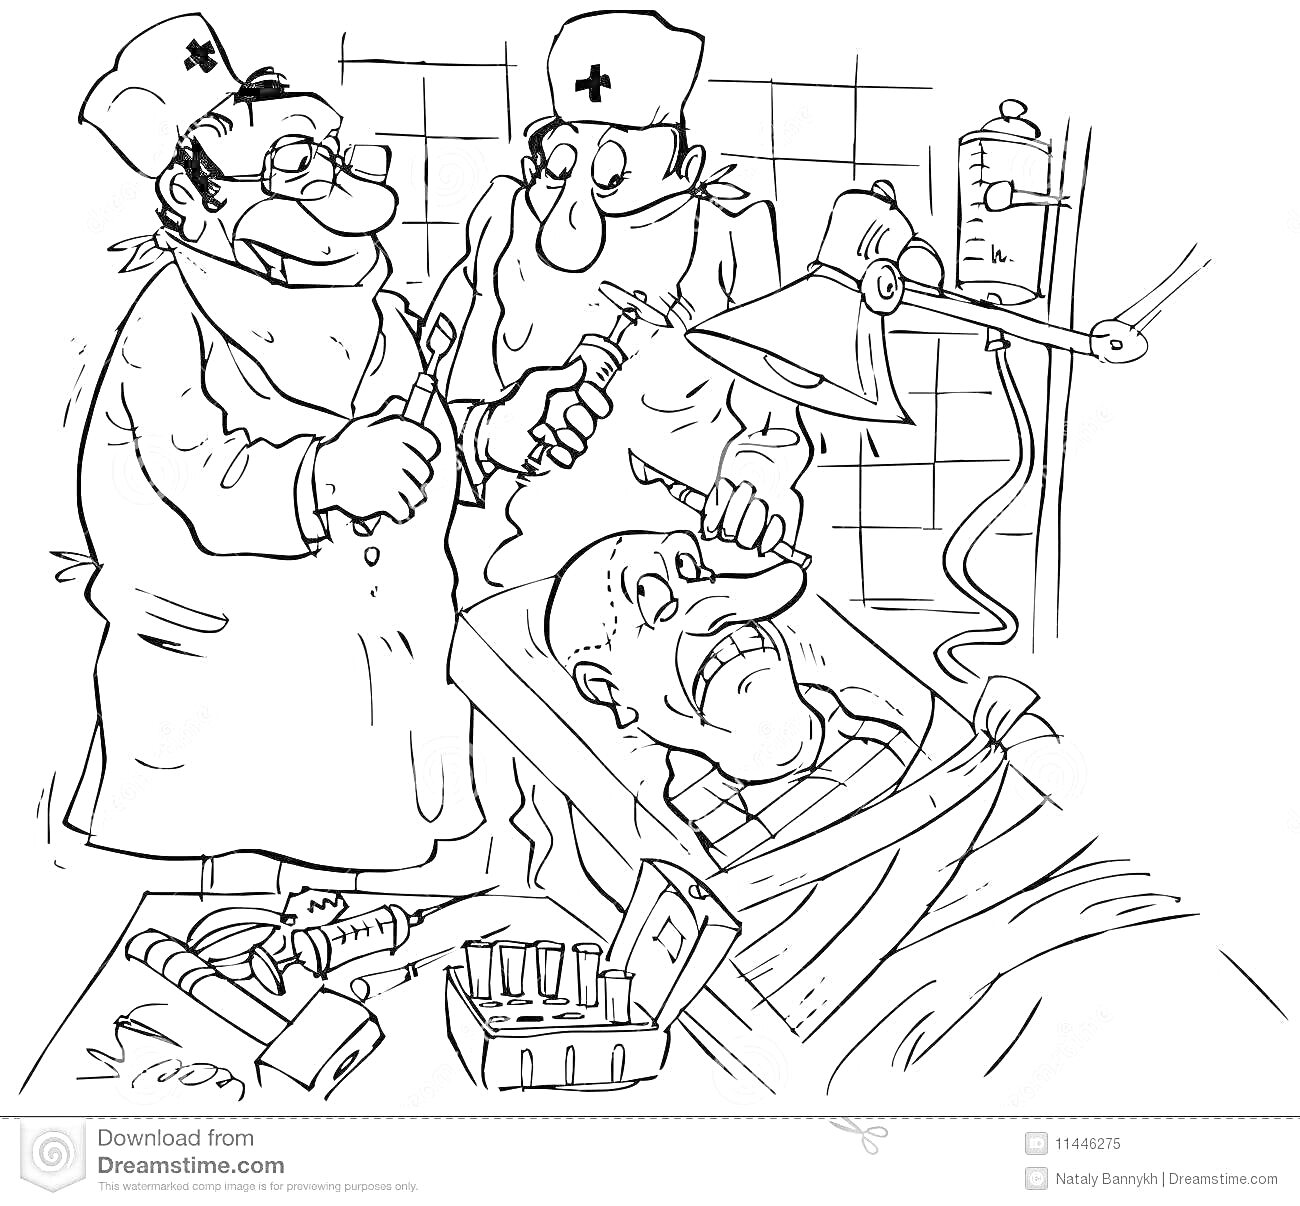 На раскраске изображено: Операция, Медицинские инструменты, Пациент, Лампа, Операционный стол, Шприц, Медицинская шапочка